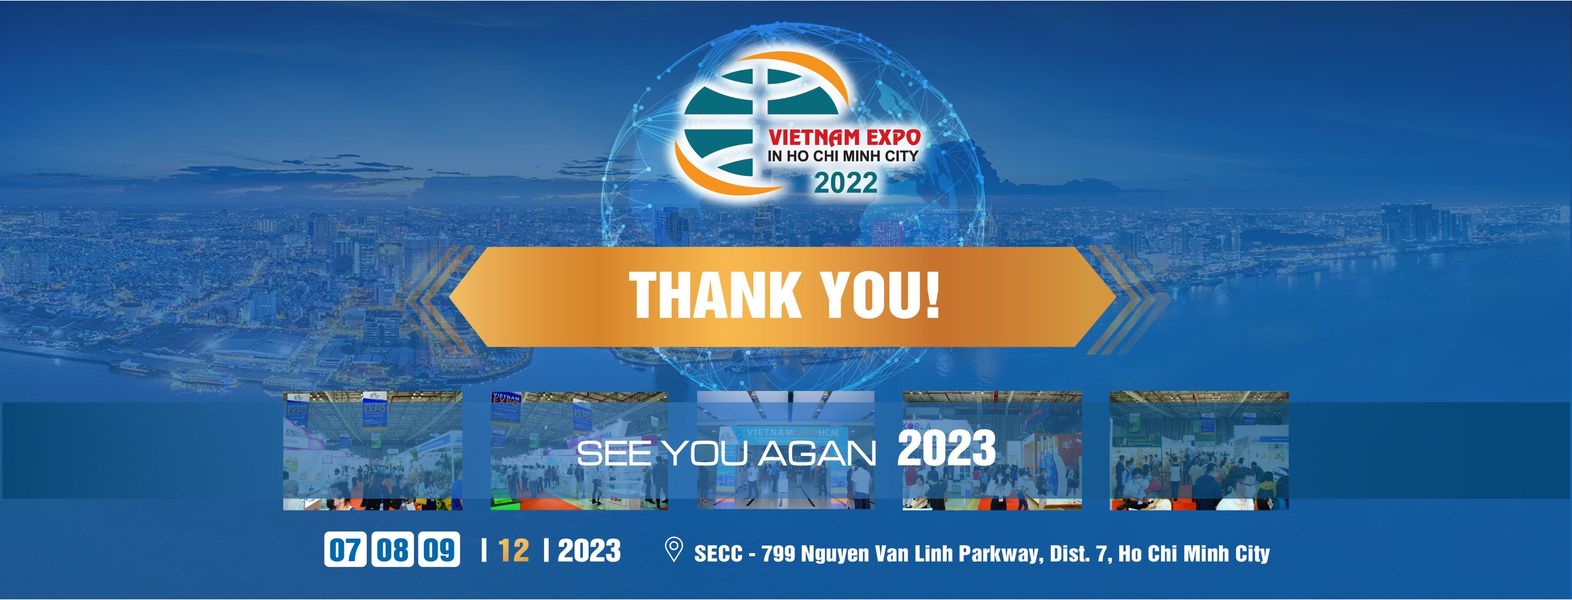 VIETNAM EXPO HCM 2023 - Hội chợ Thương mại Quốc tế Việt Nam lần thứ 21 tại TP.HCM